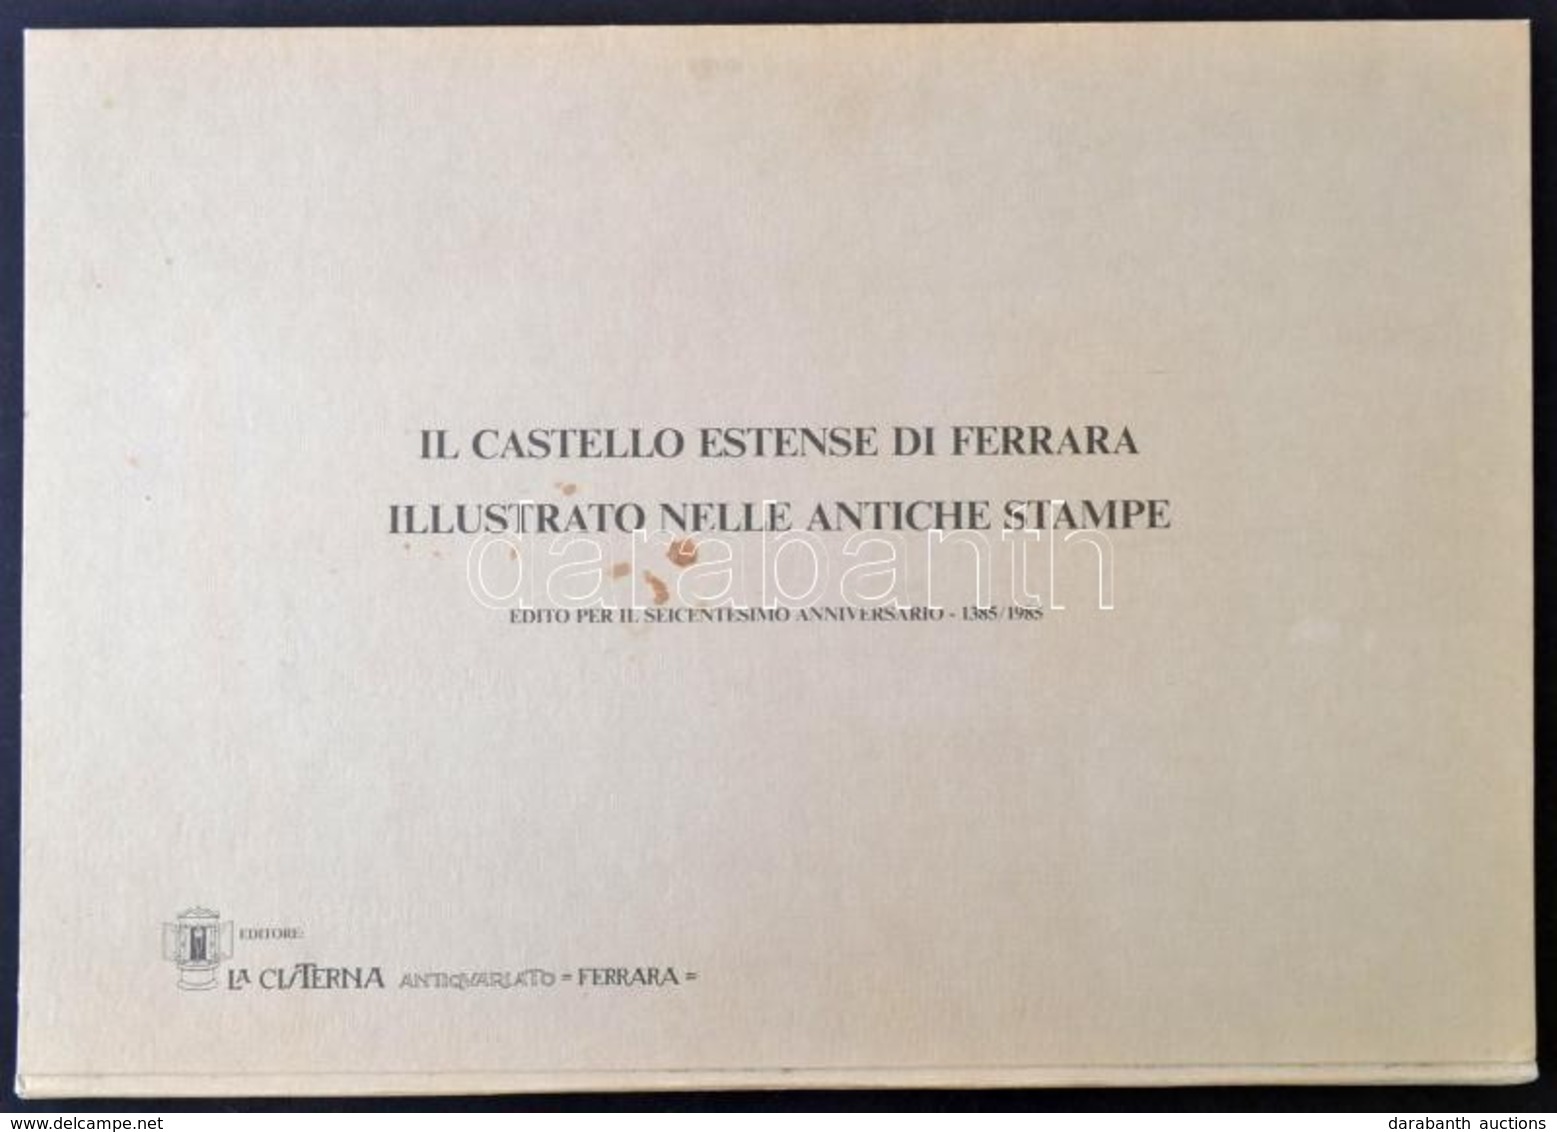 Il Castello Estense Di Ferrara Illustrato Nelle Antiche Stampe. Edito Per Il Seicentesimo Anninversario 1385-1985. Ferra - Sin Clasificación